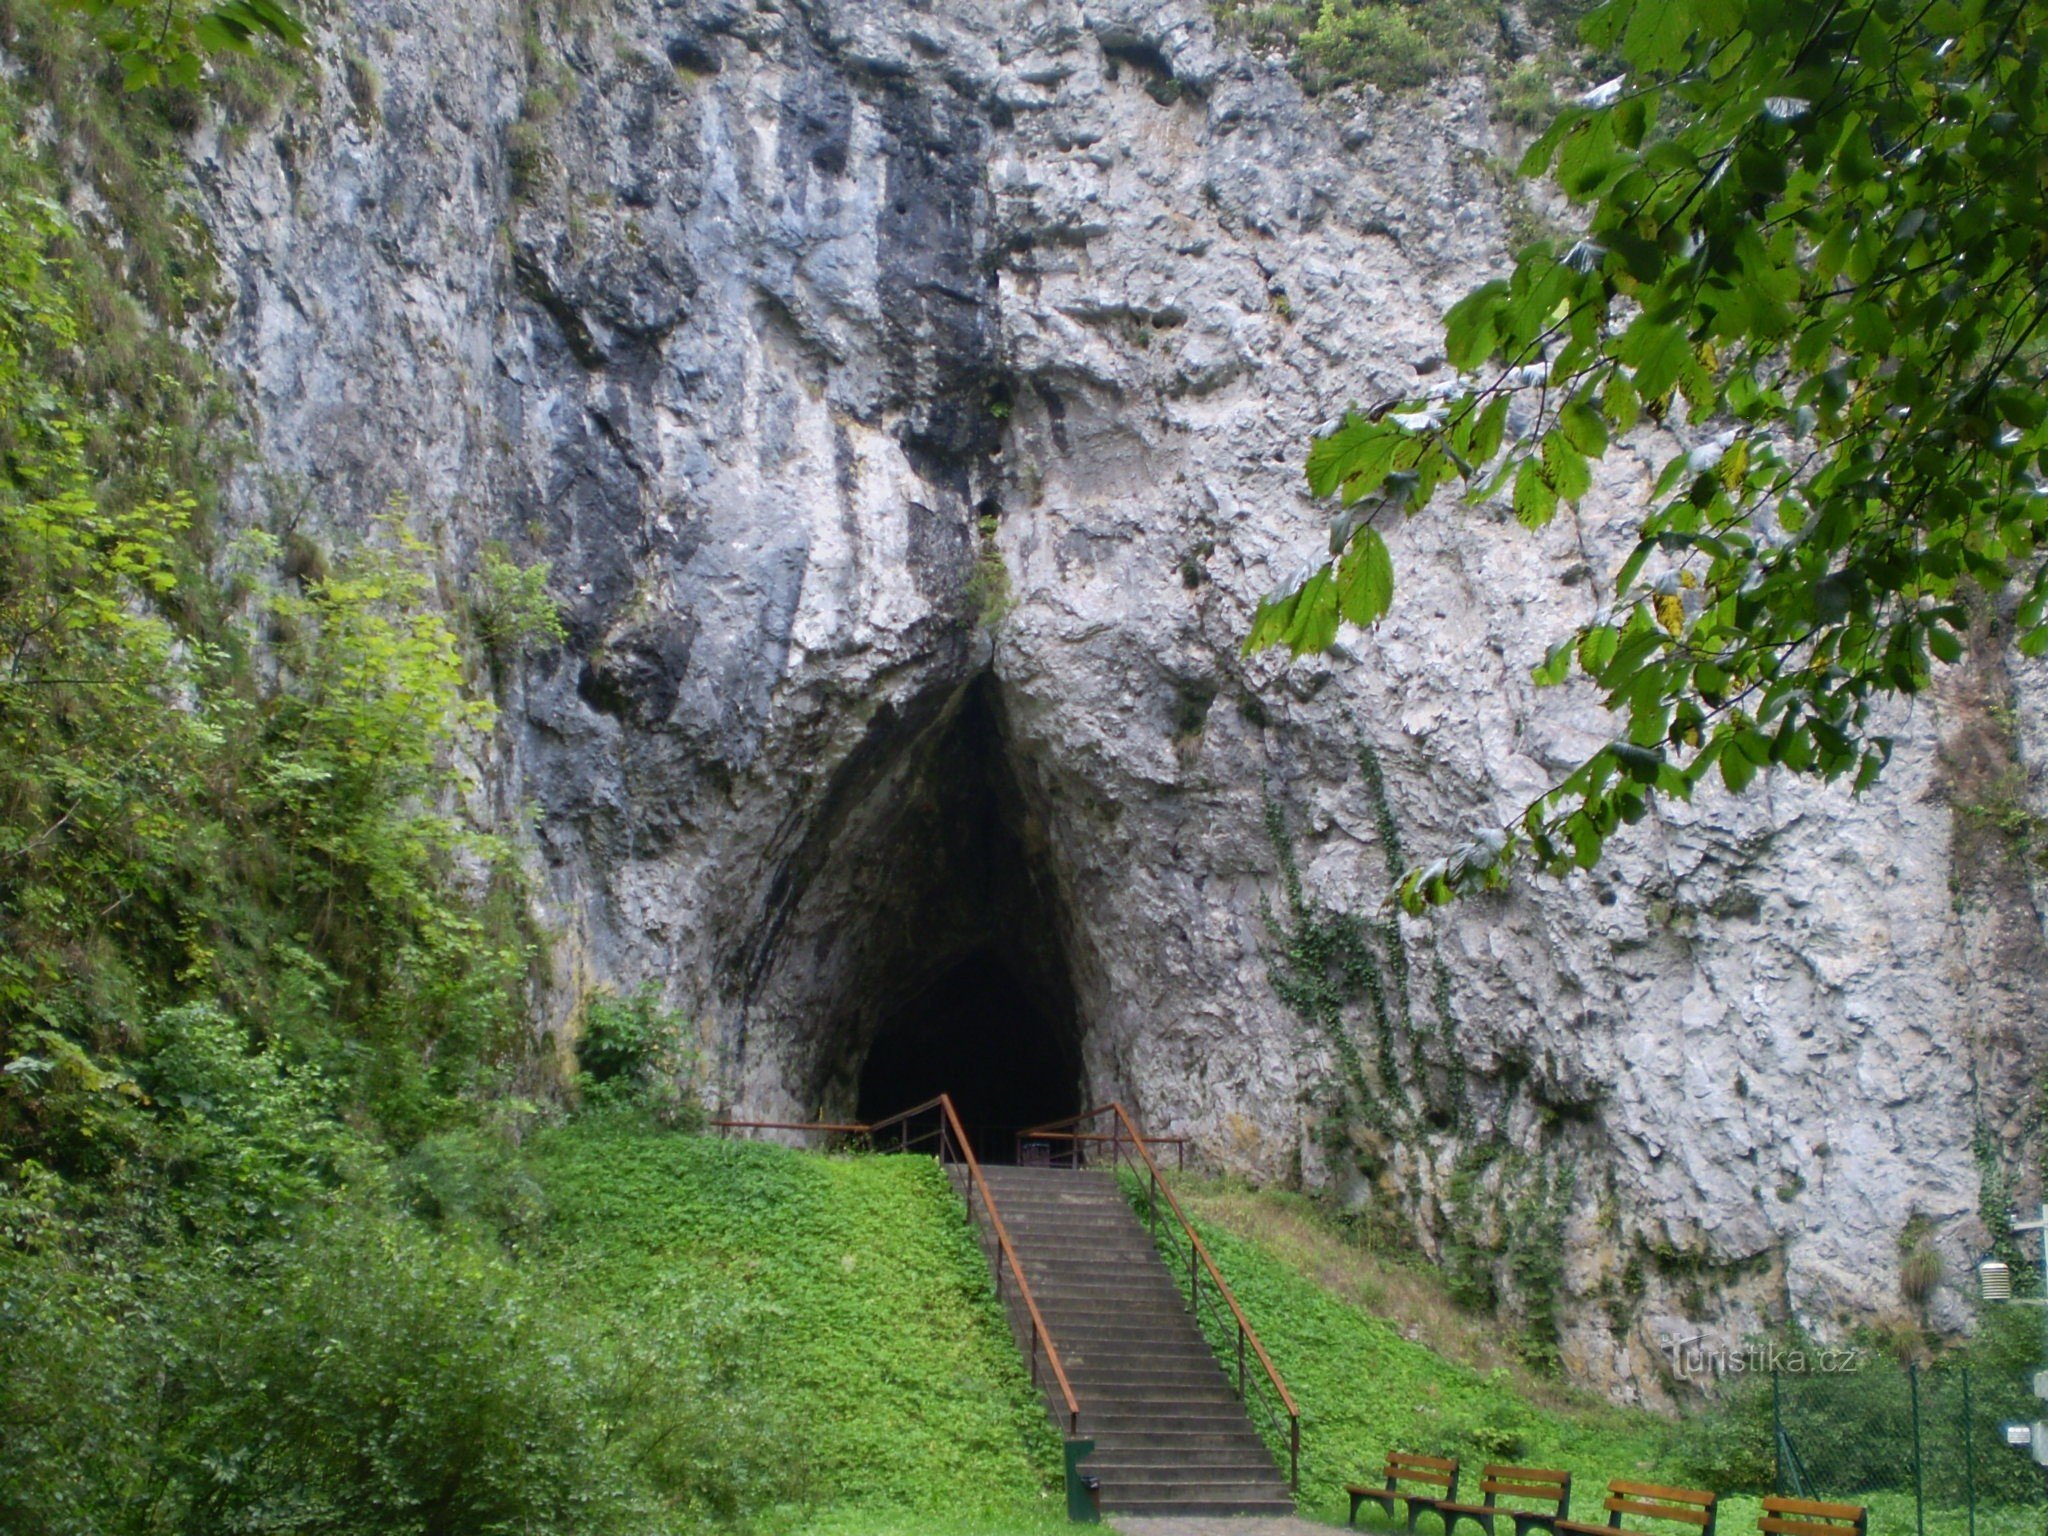 Indgang til hulen